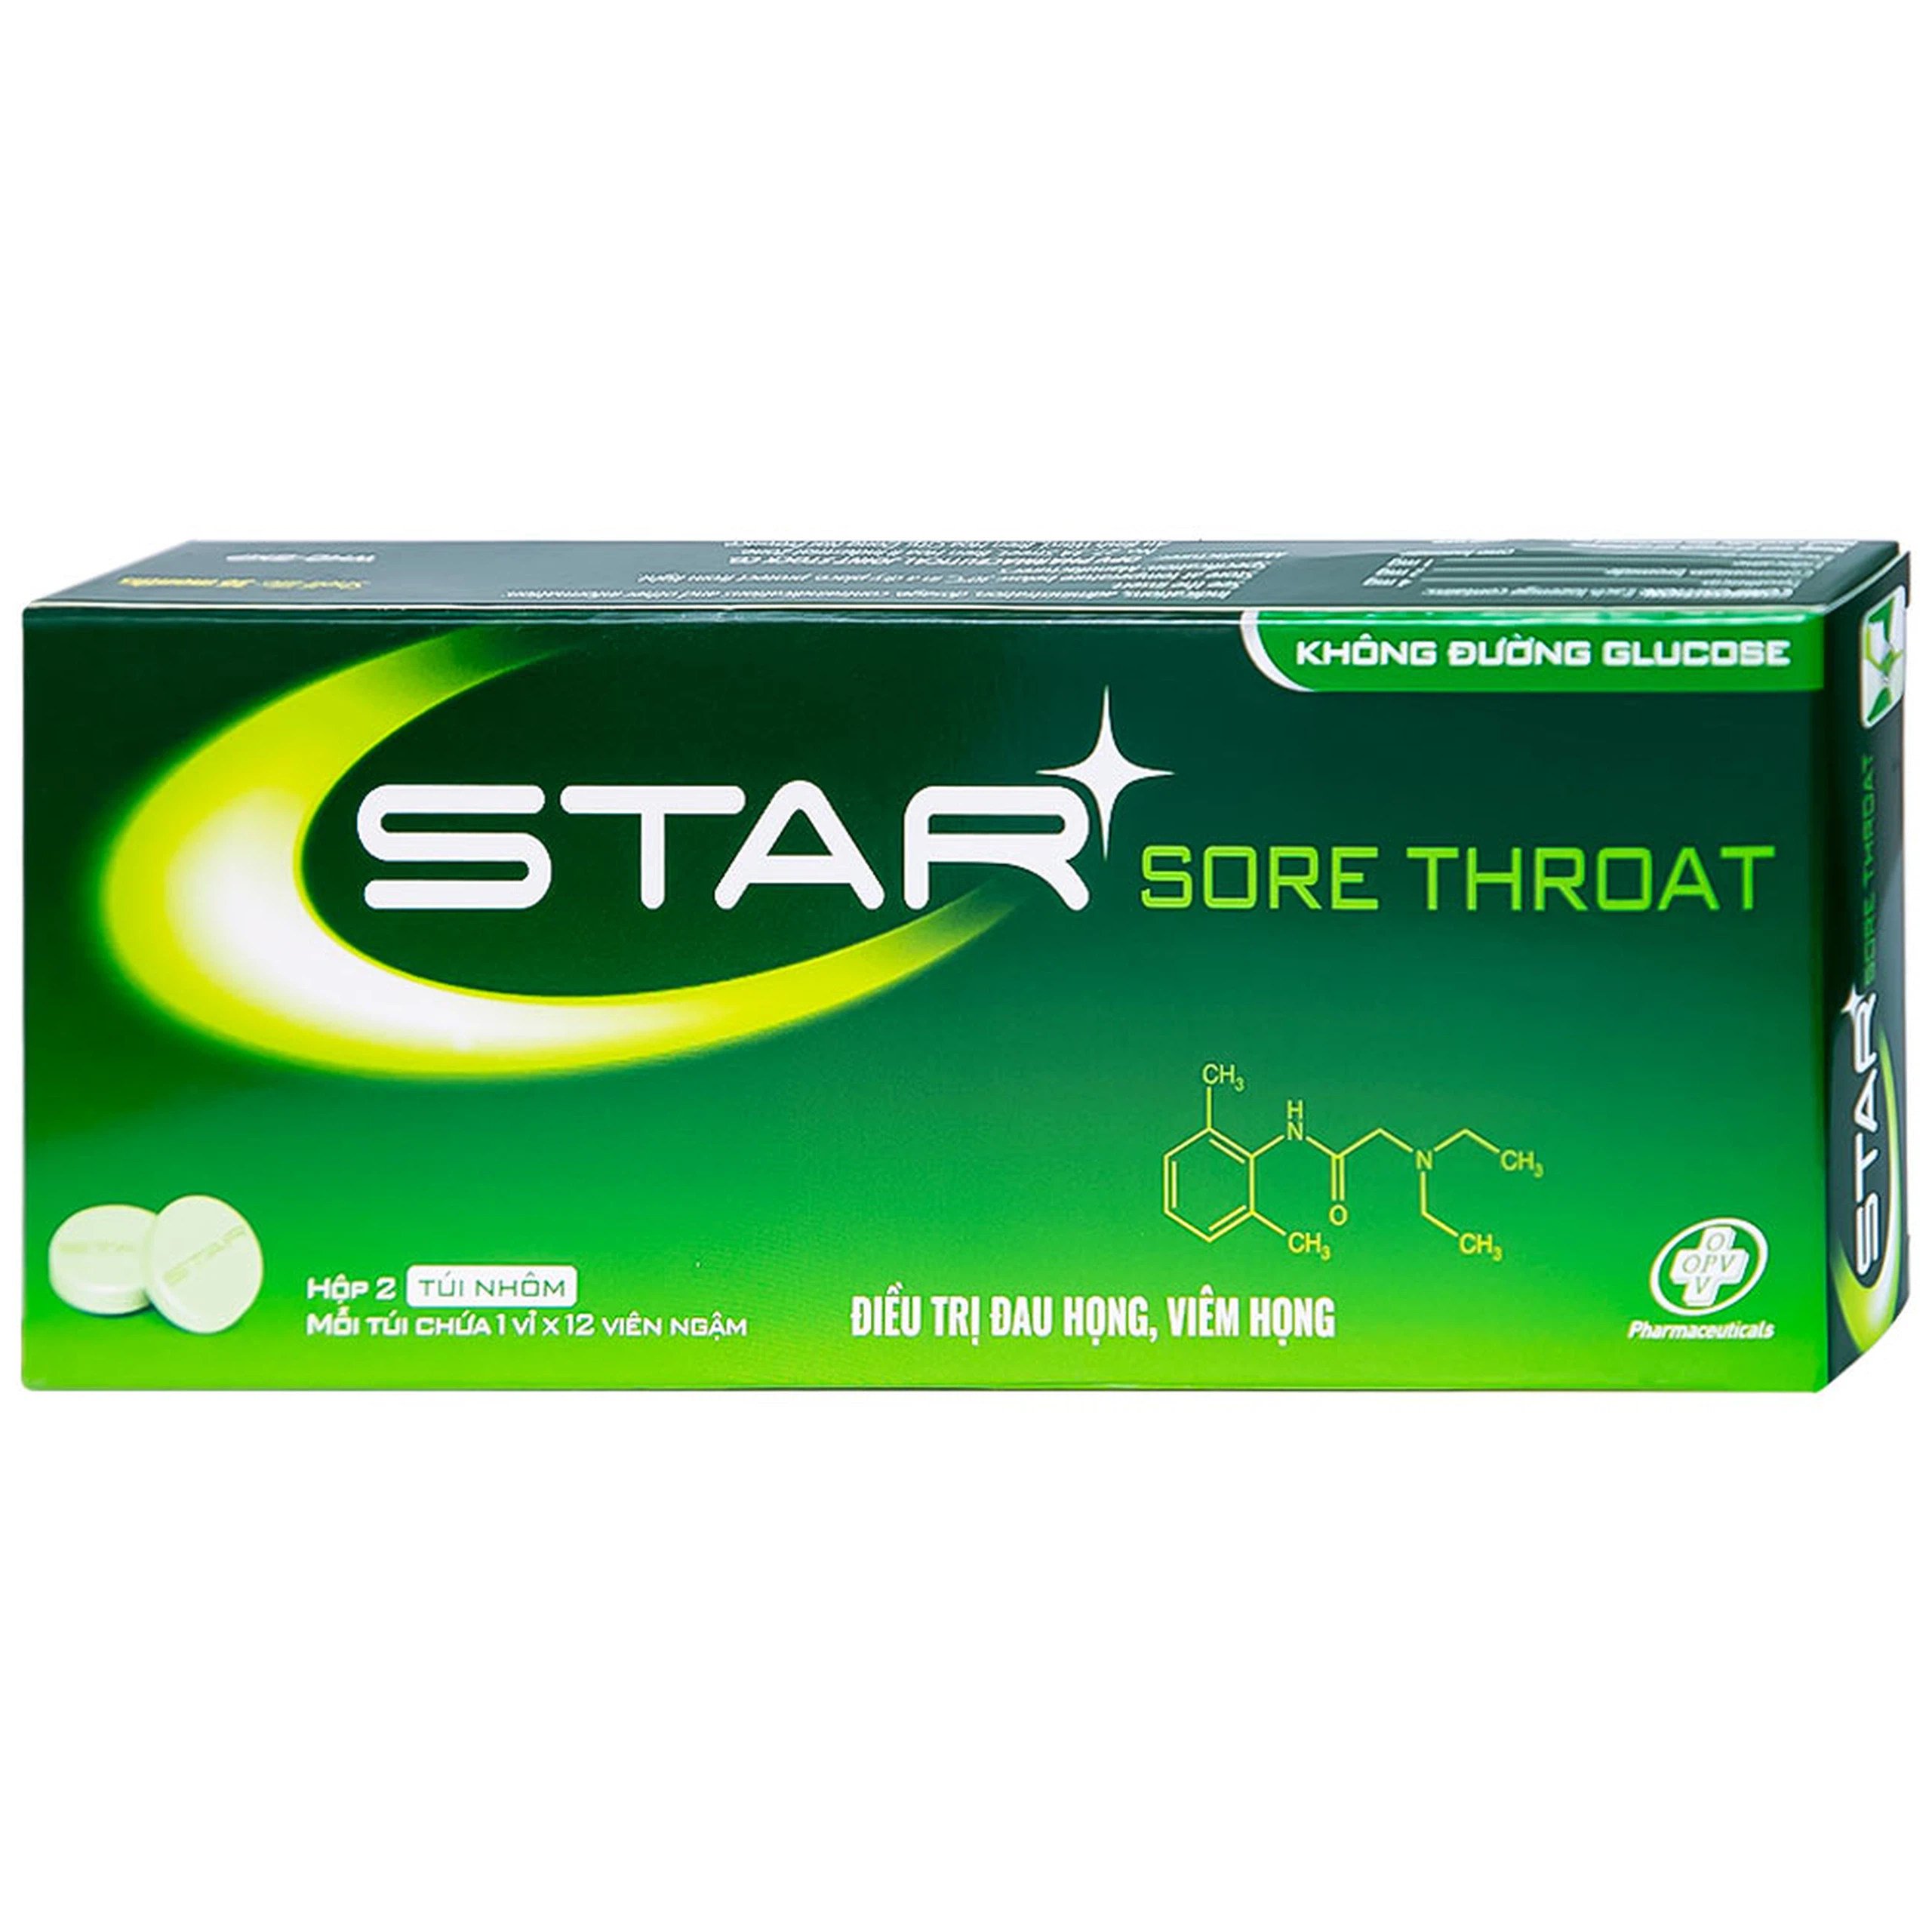 Viên ngậm Star Sore Throat OPV không đường điều trị đau họng, viêm họng (2 vỉ x 12 viên)